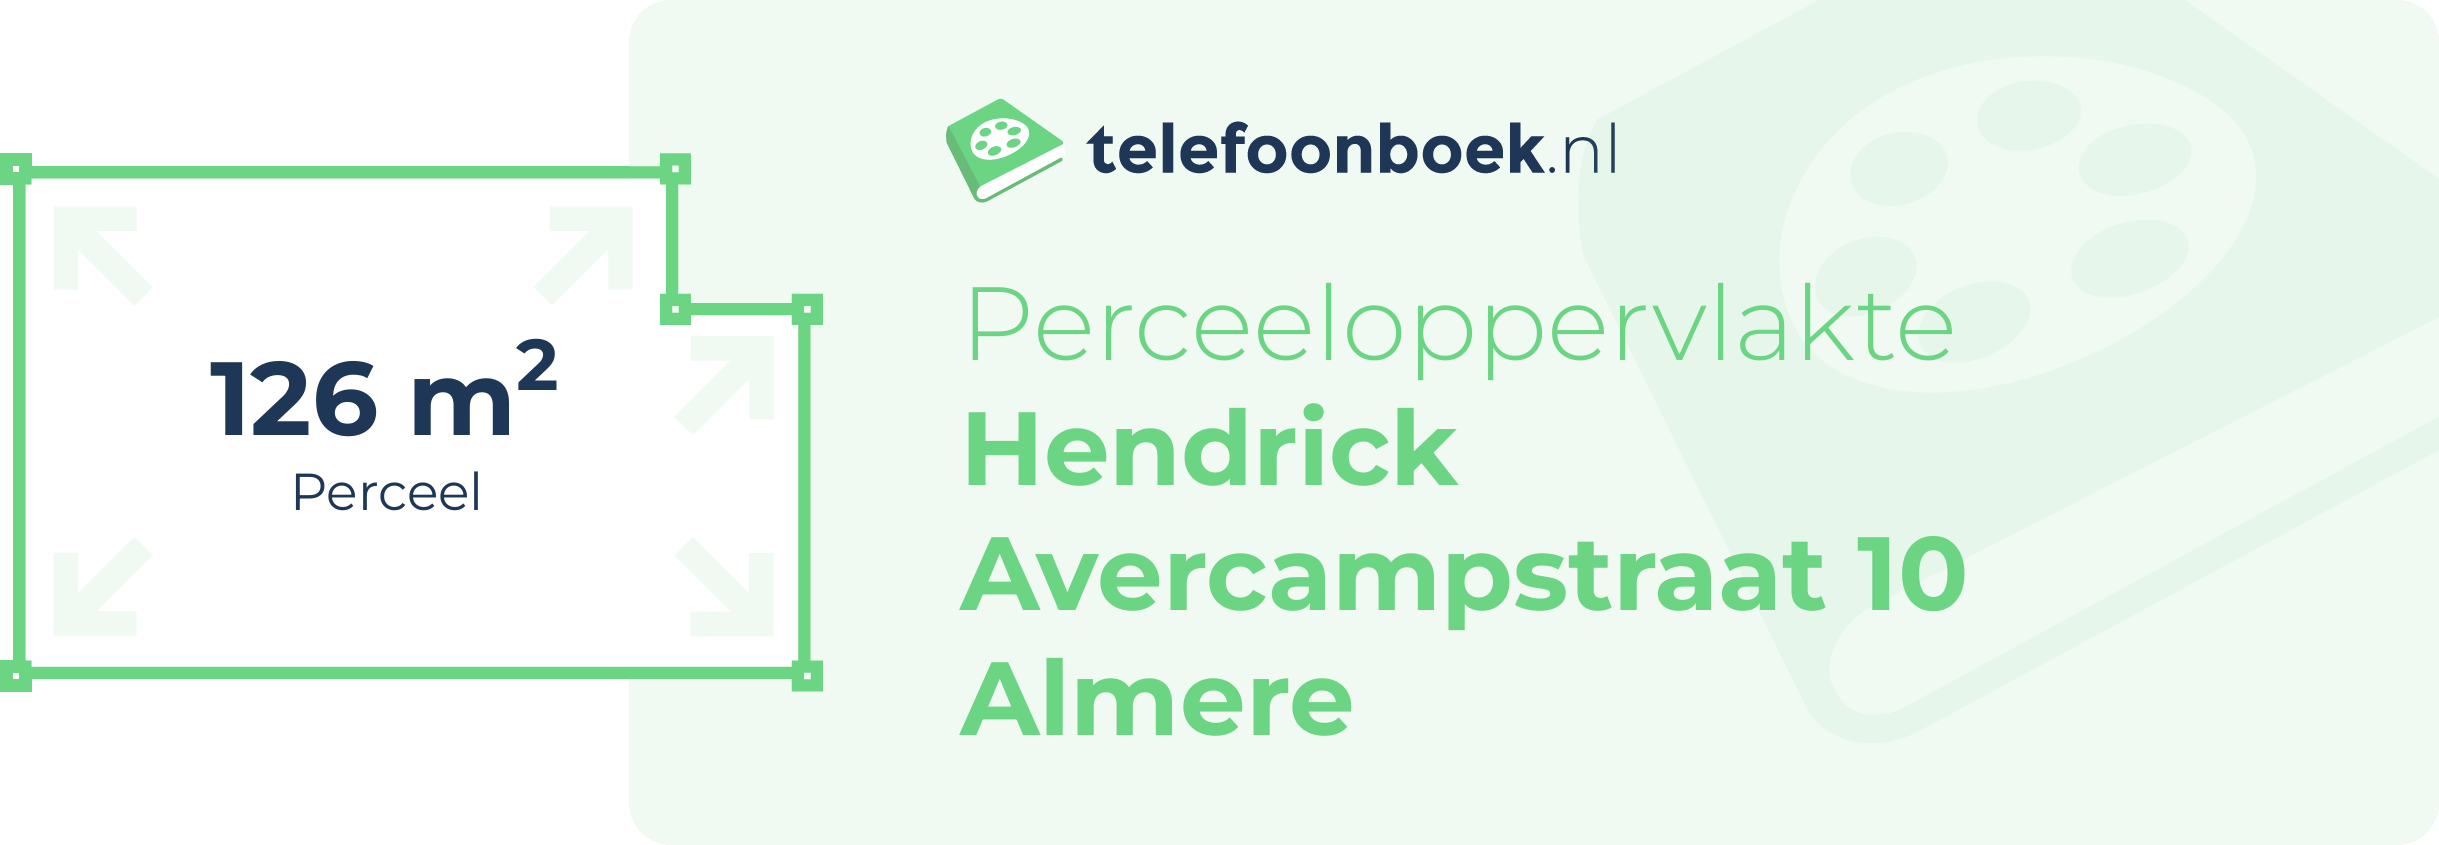 Perceeloppervlakte Hendrick Avercampstraat 10 Almere